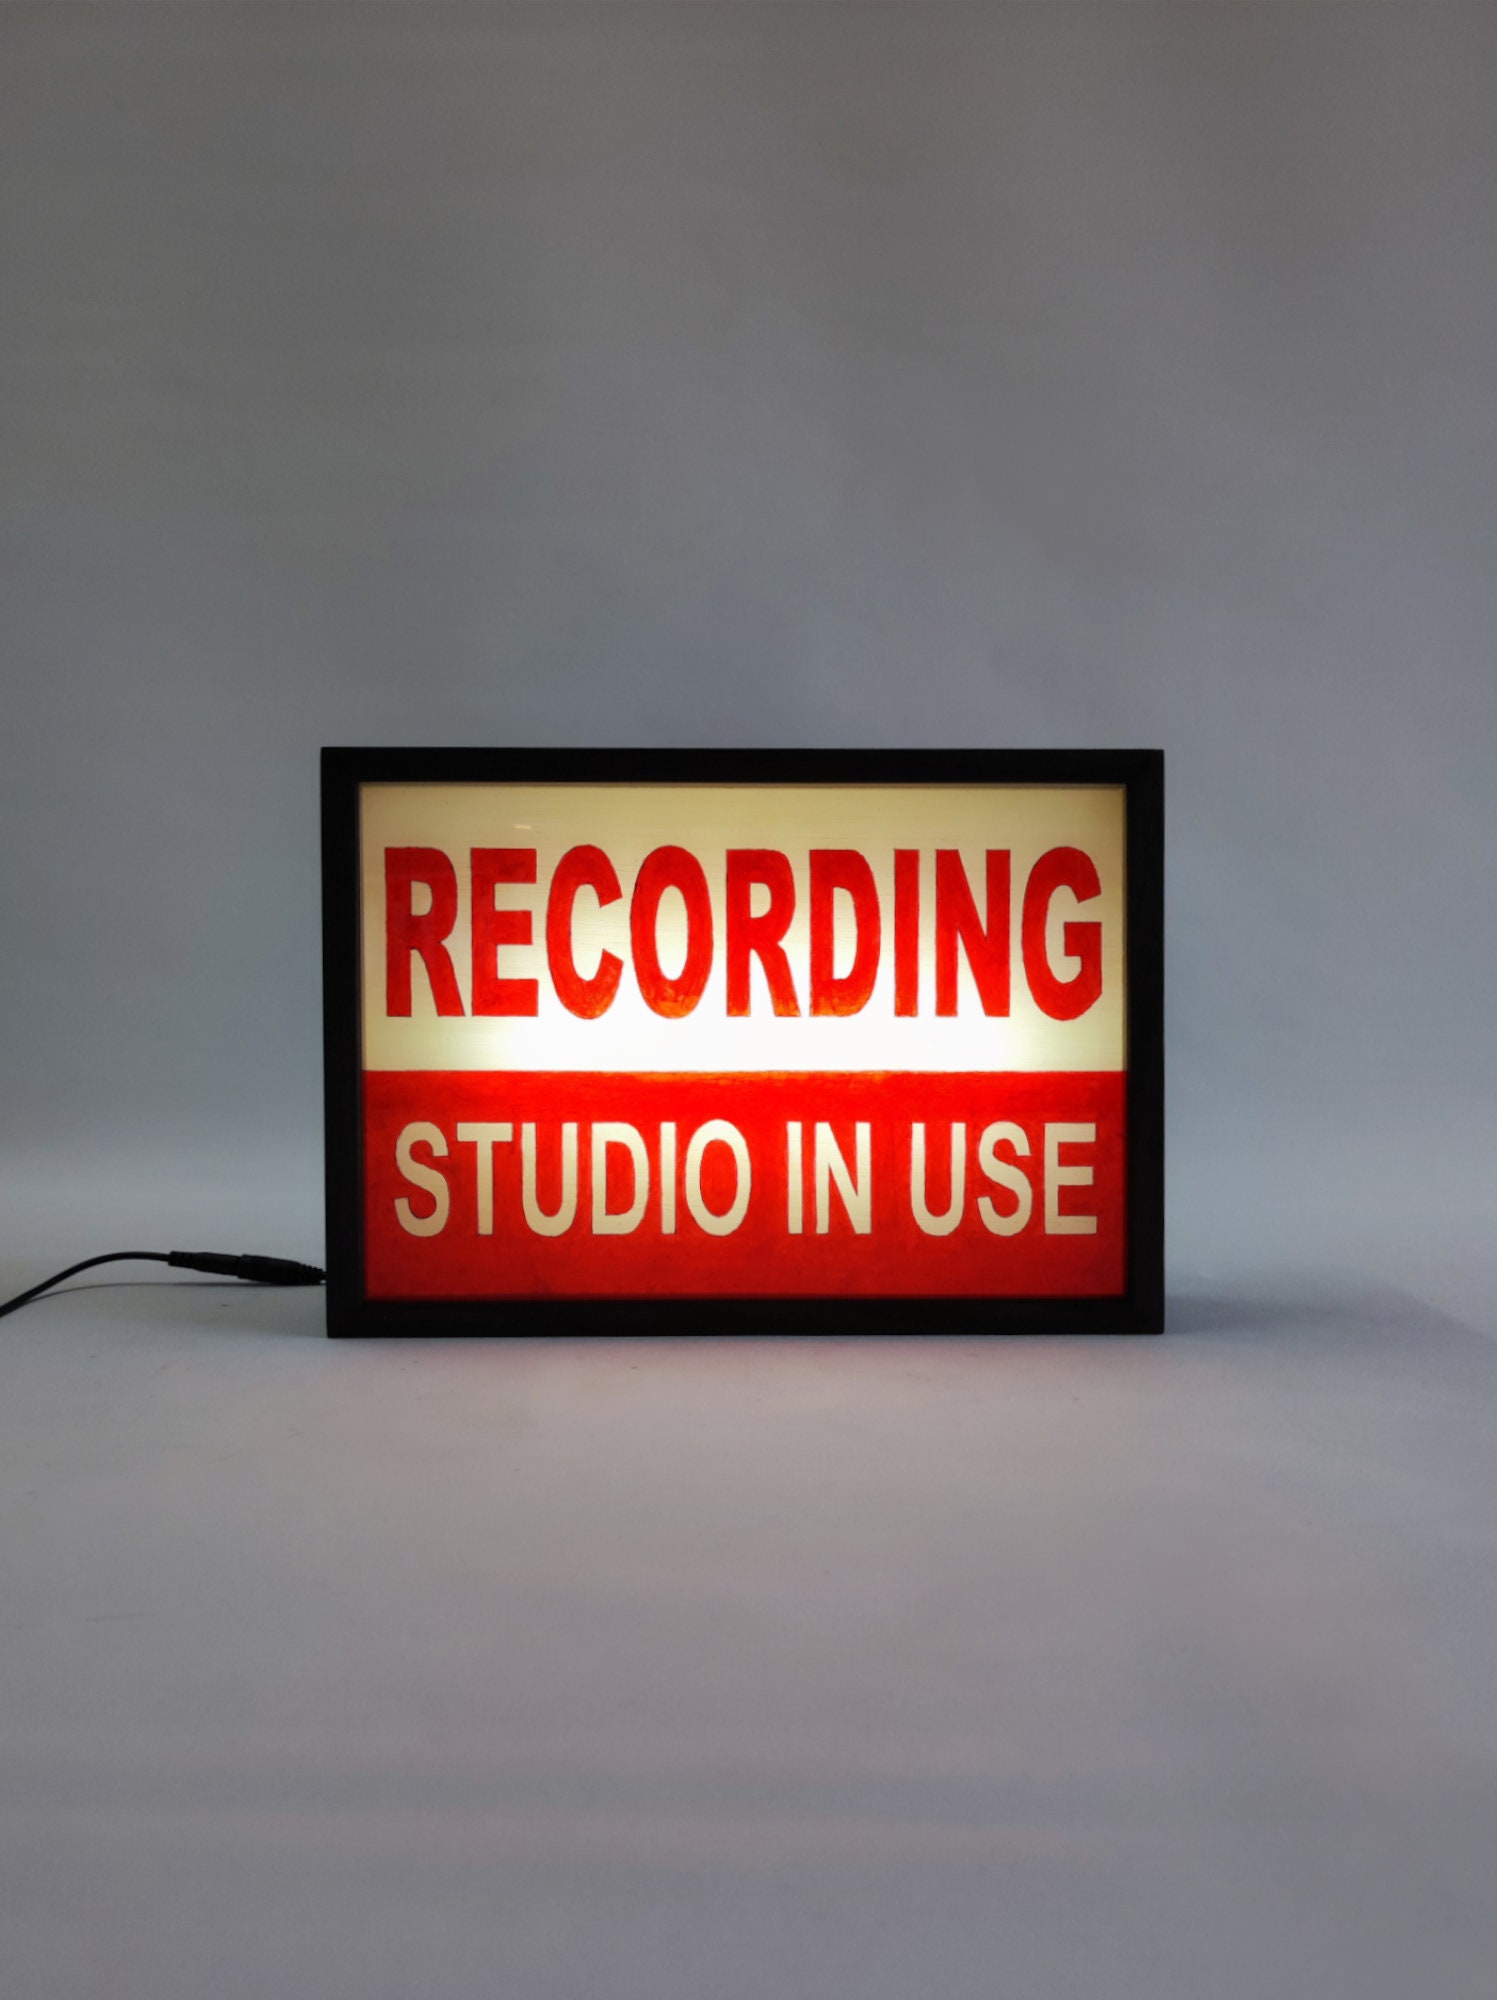 Tutustu 97+ imagen recording studio sign